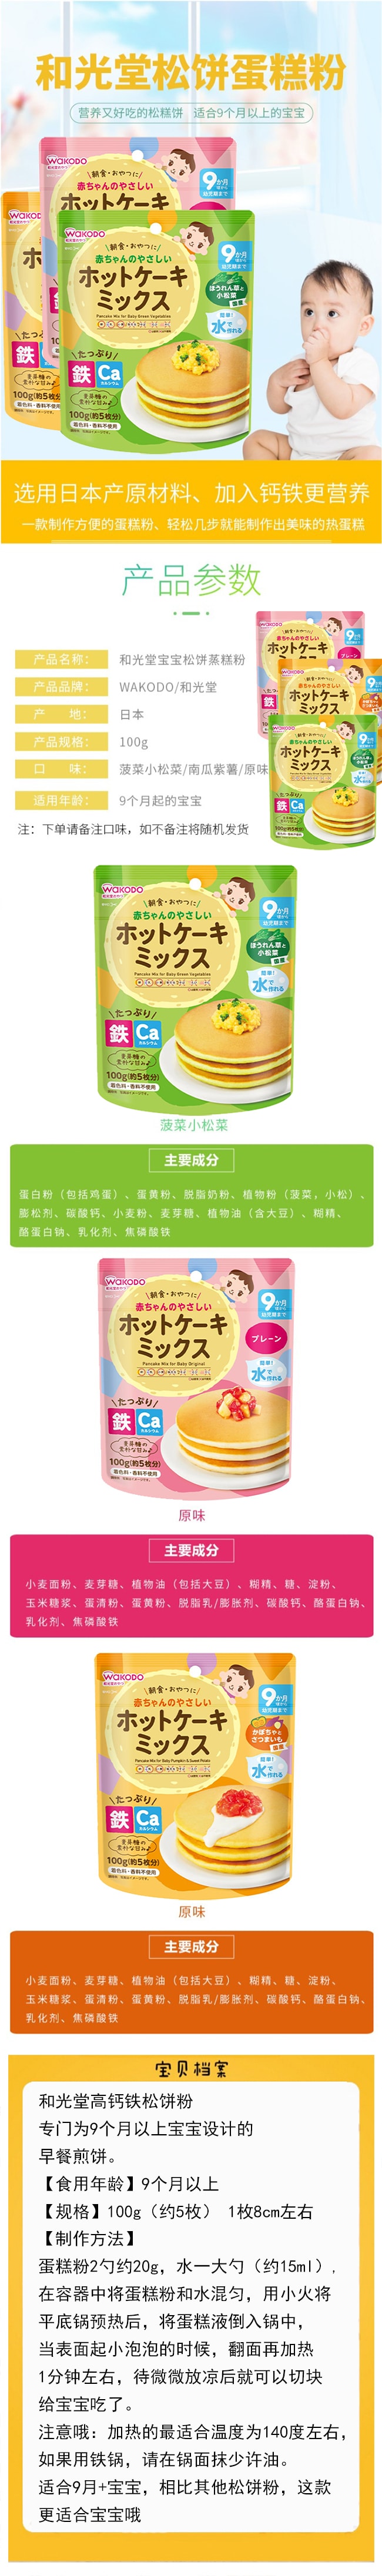 【日本直邮】WAKODO和光堂 9个月宝宝辅食蛋糕粉100g 松饼粉 原味